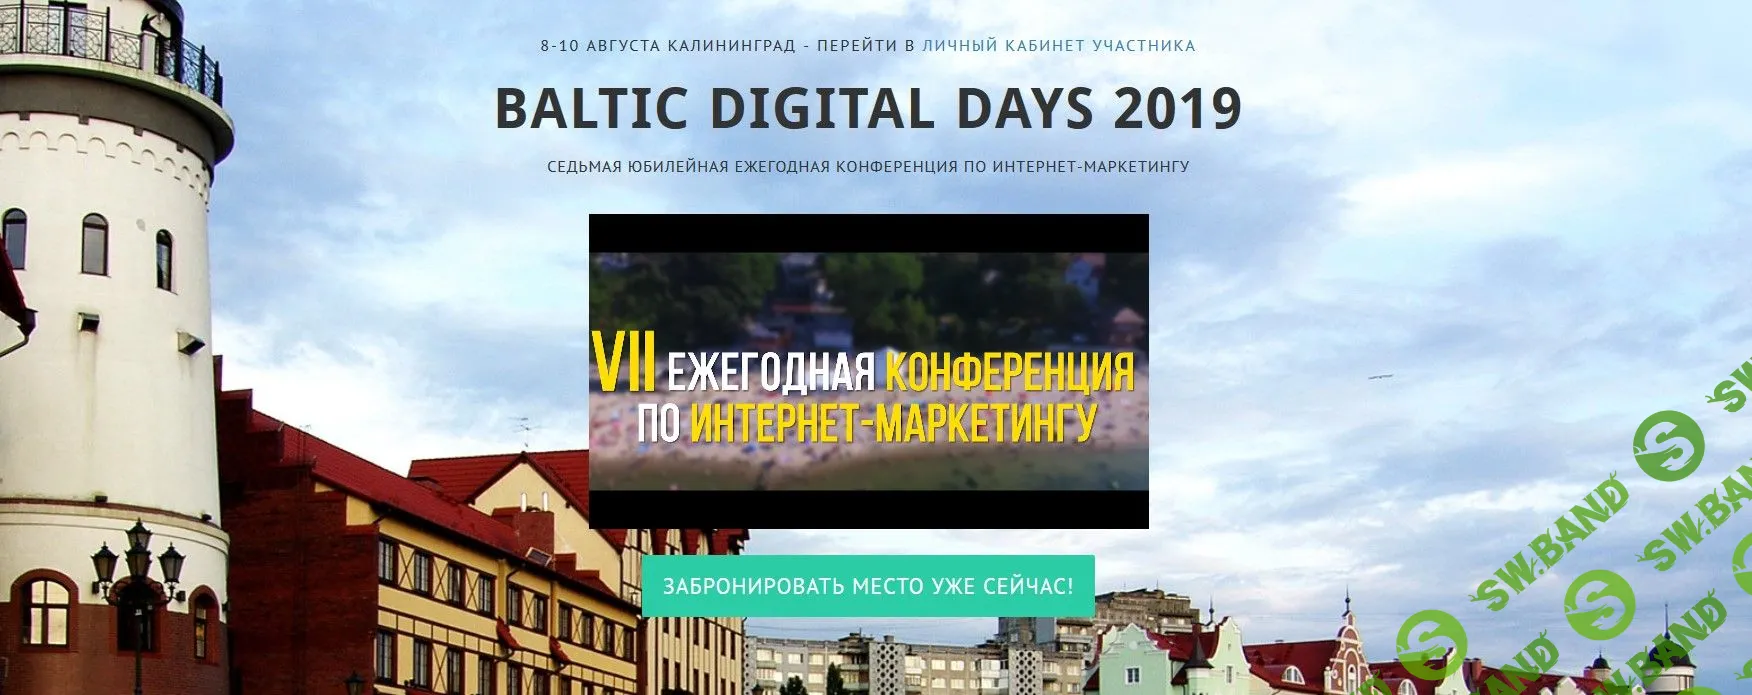 Baltic Digital Days 2019